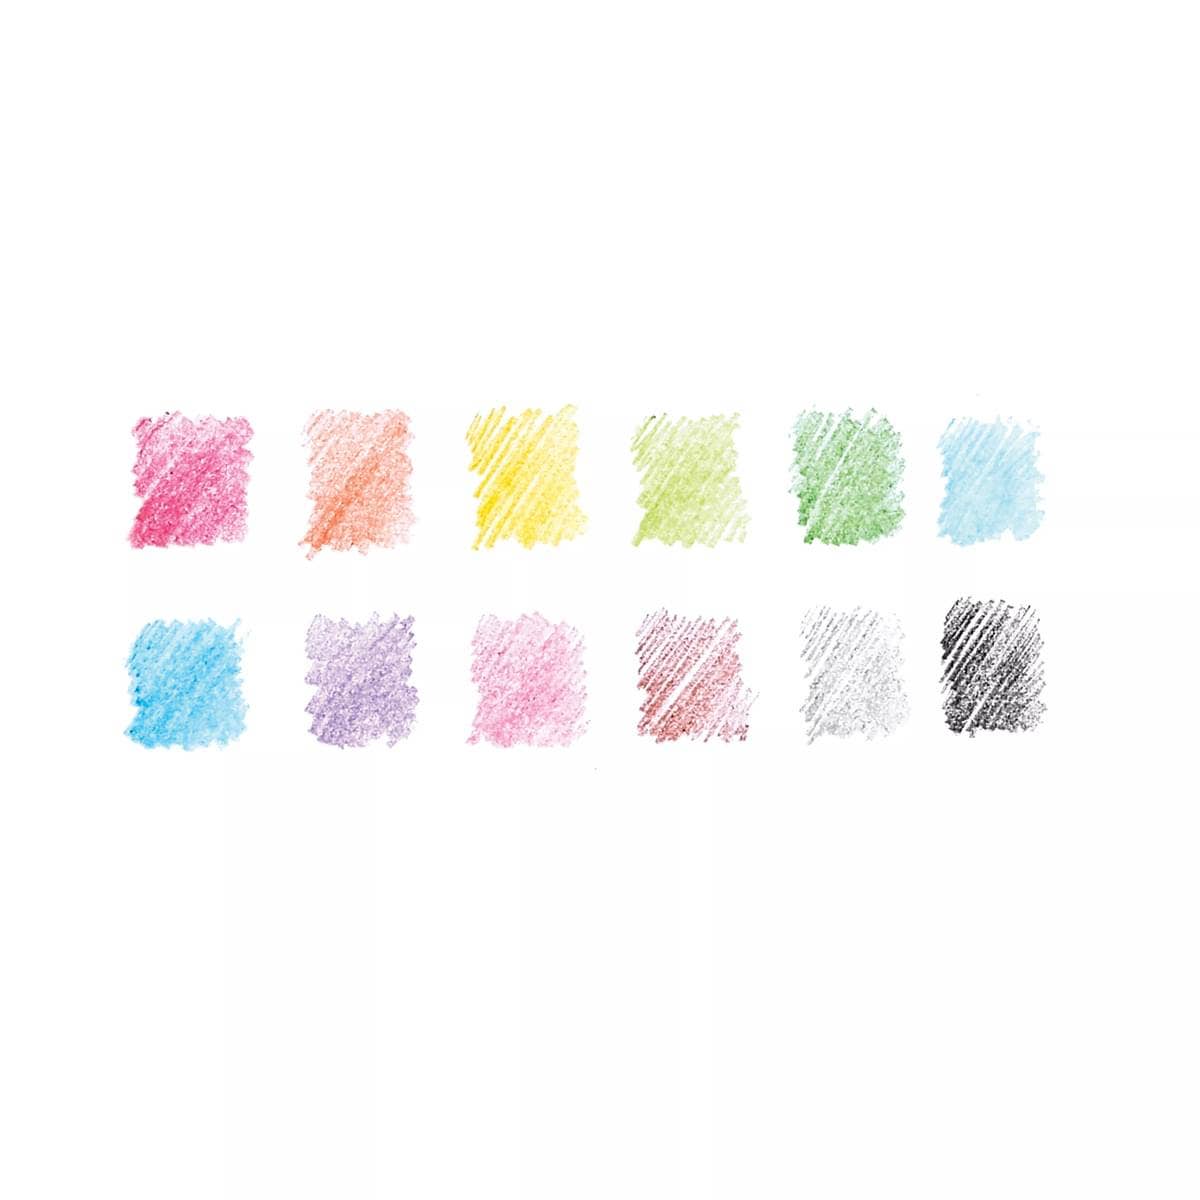 Un-Mistake-Ables! Erasable Colored Pencils- (Set of 12)